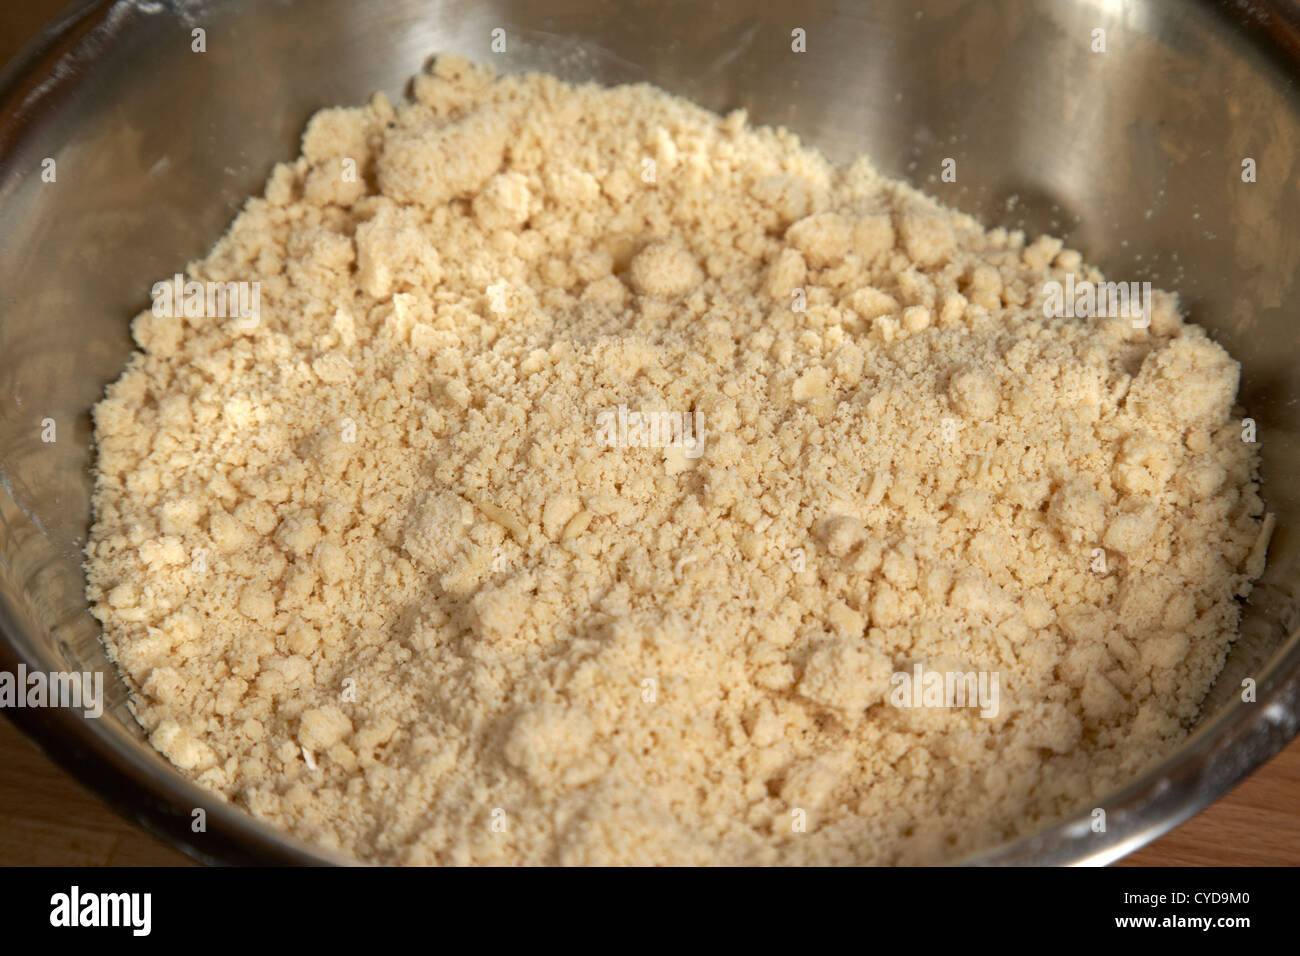 La farina e il burro mescolato insieme come la base di pasta frolla in una ciotola di metallo Foto Stock